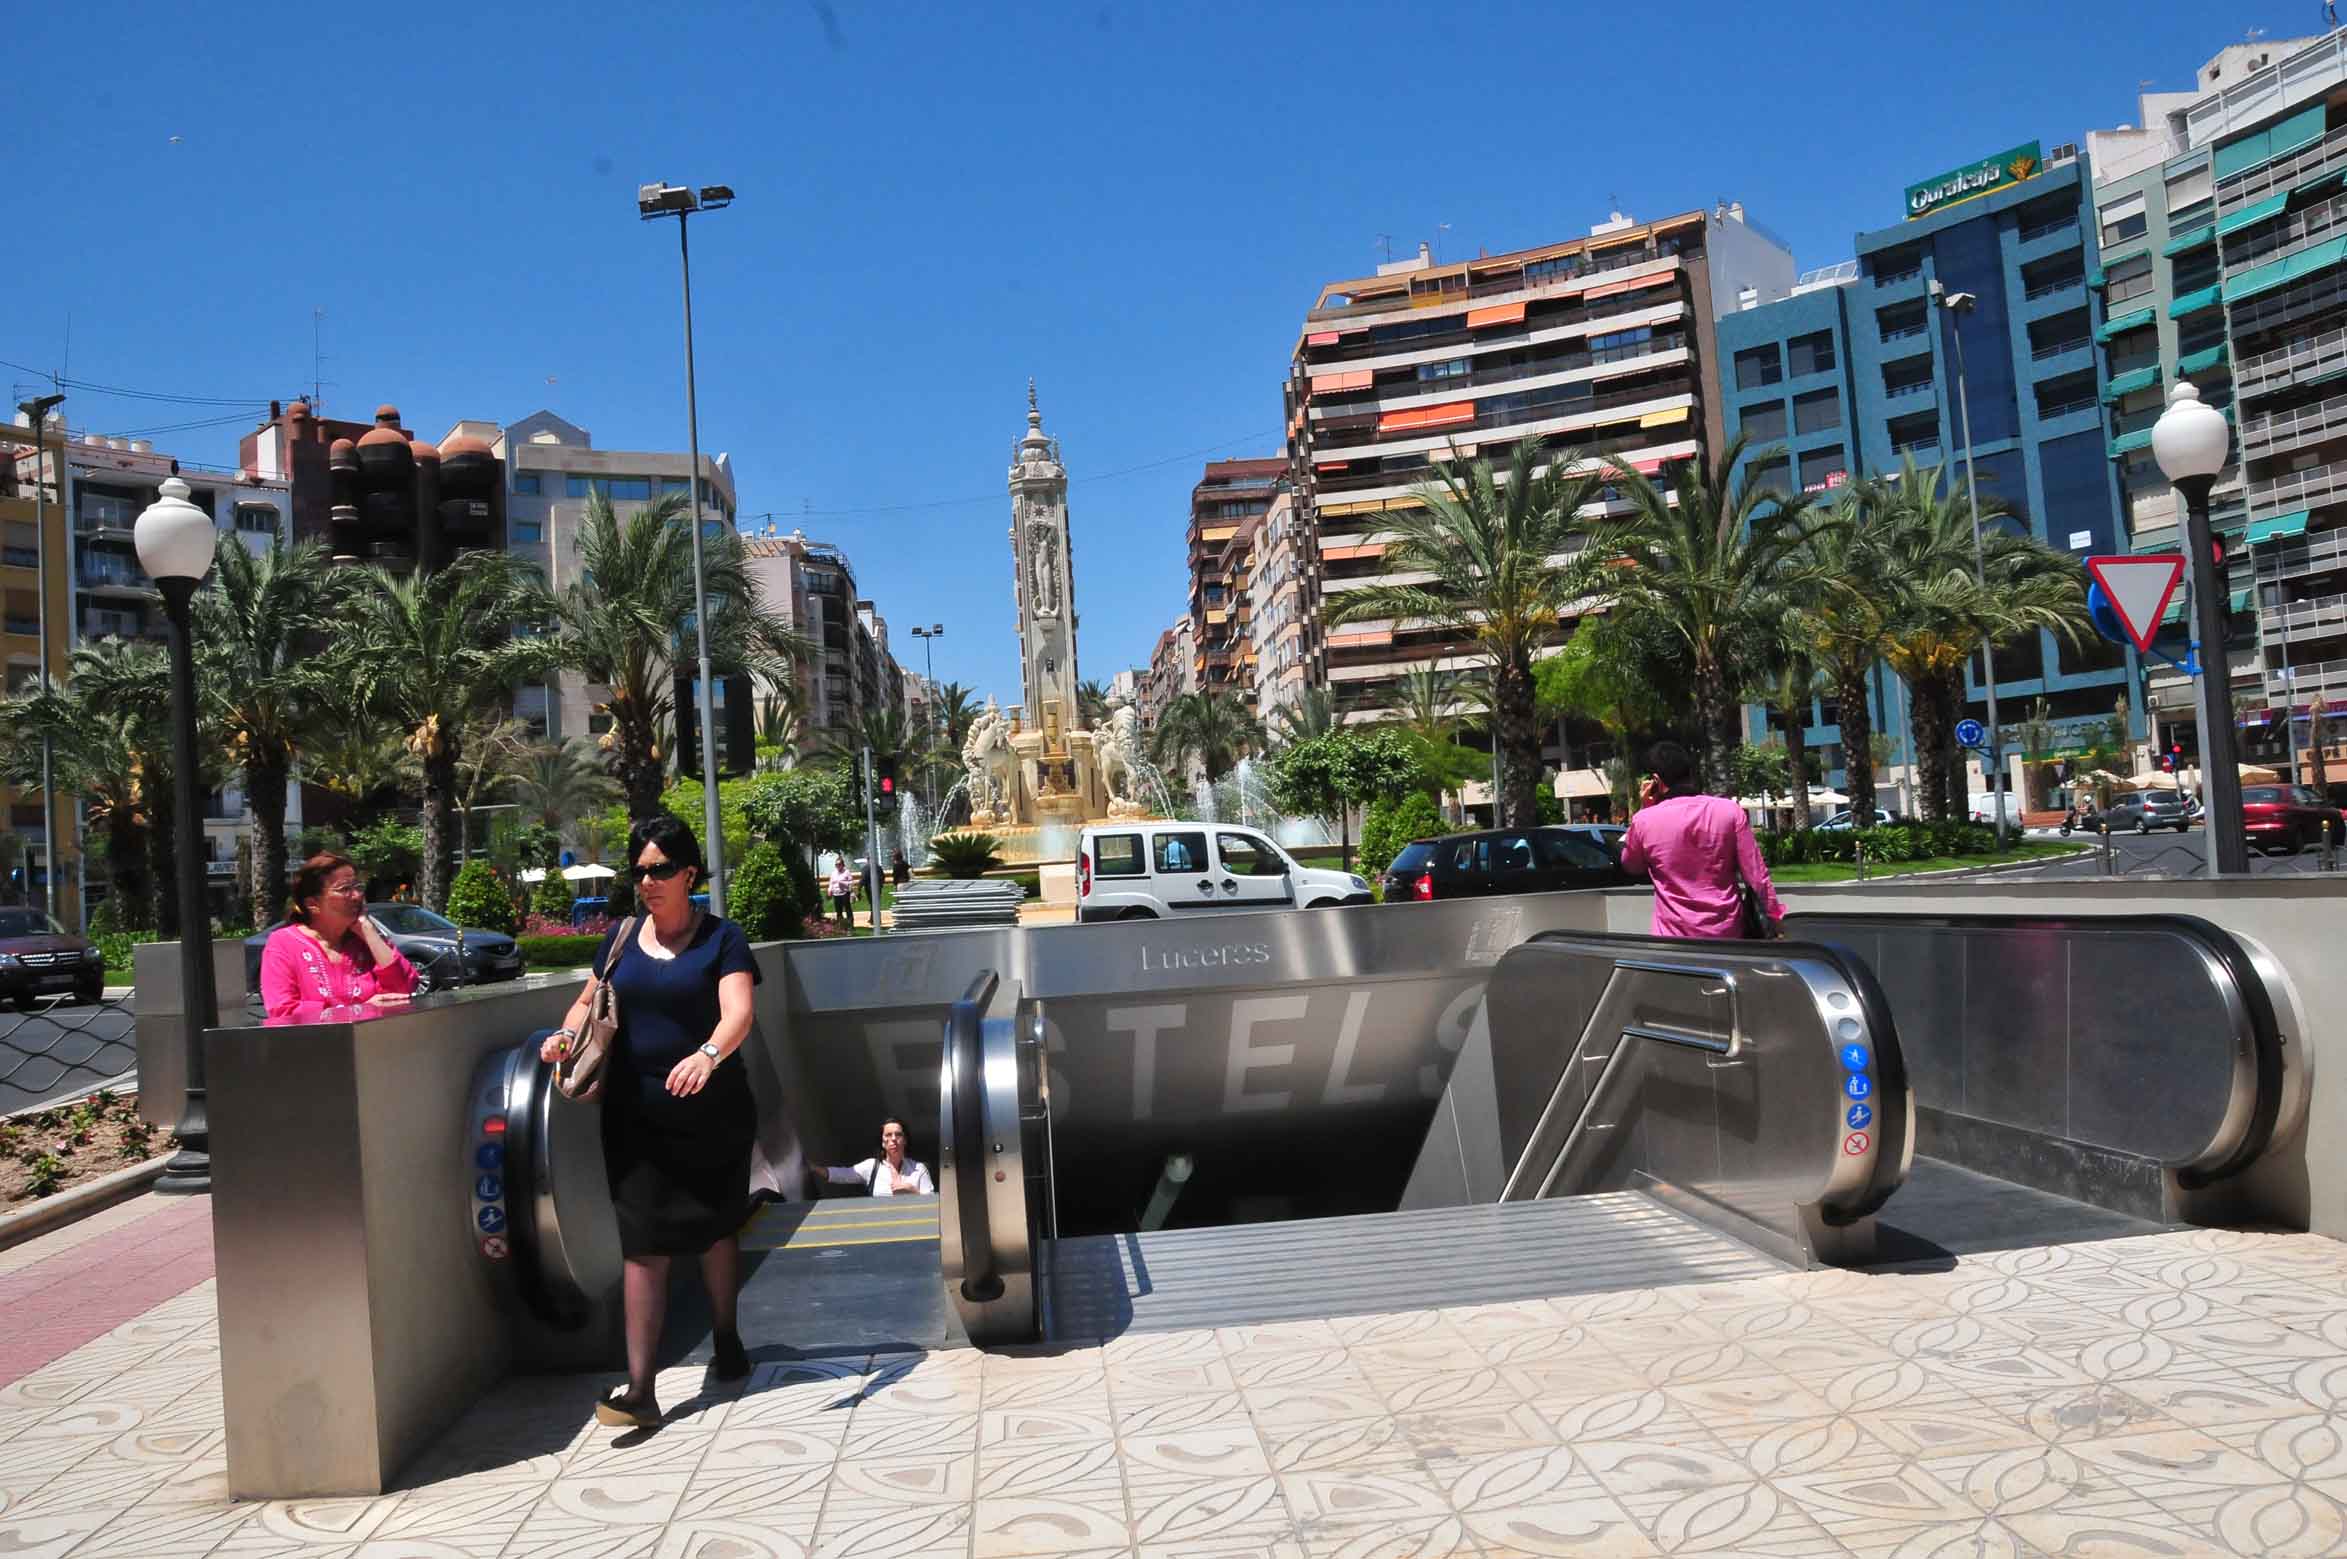 Estación del Tram en la plaza Luceros de Alicante.